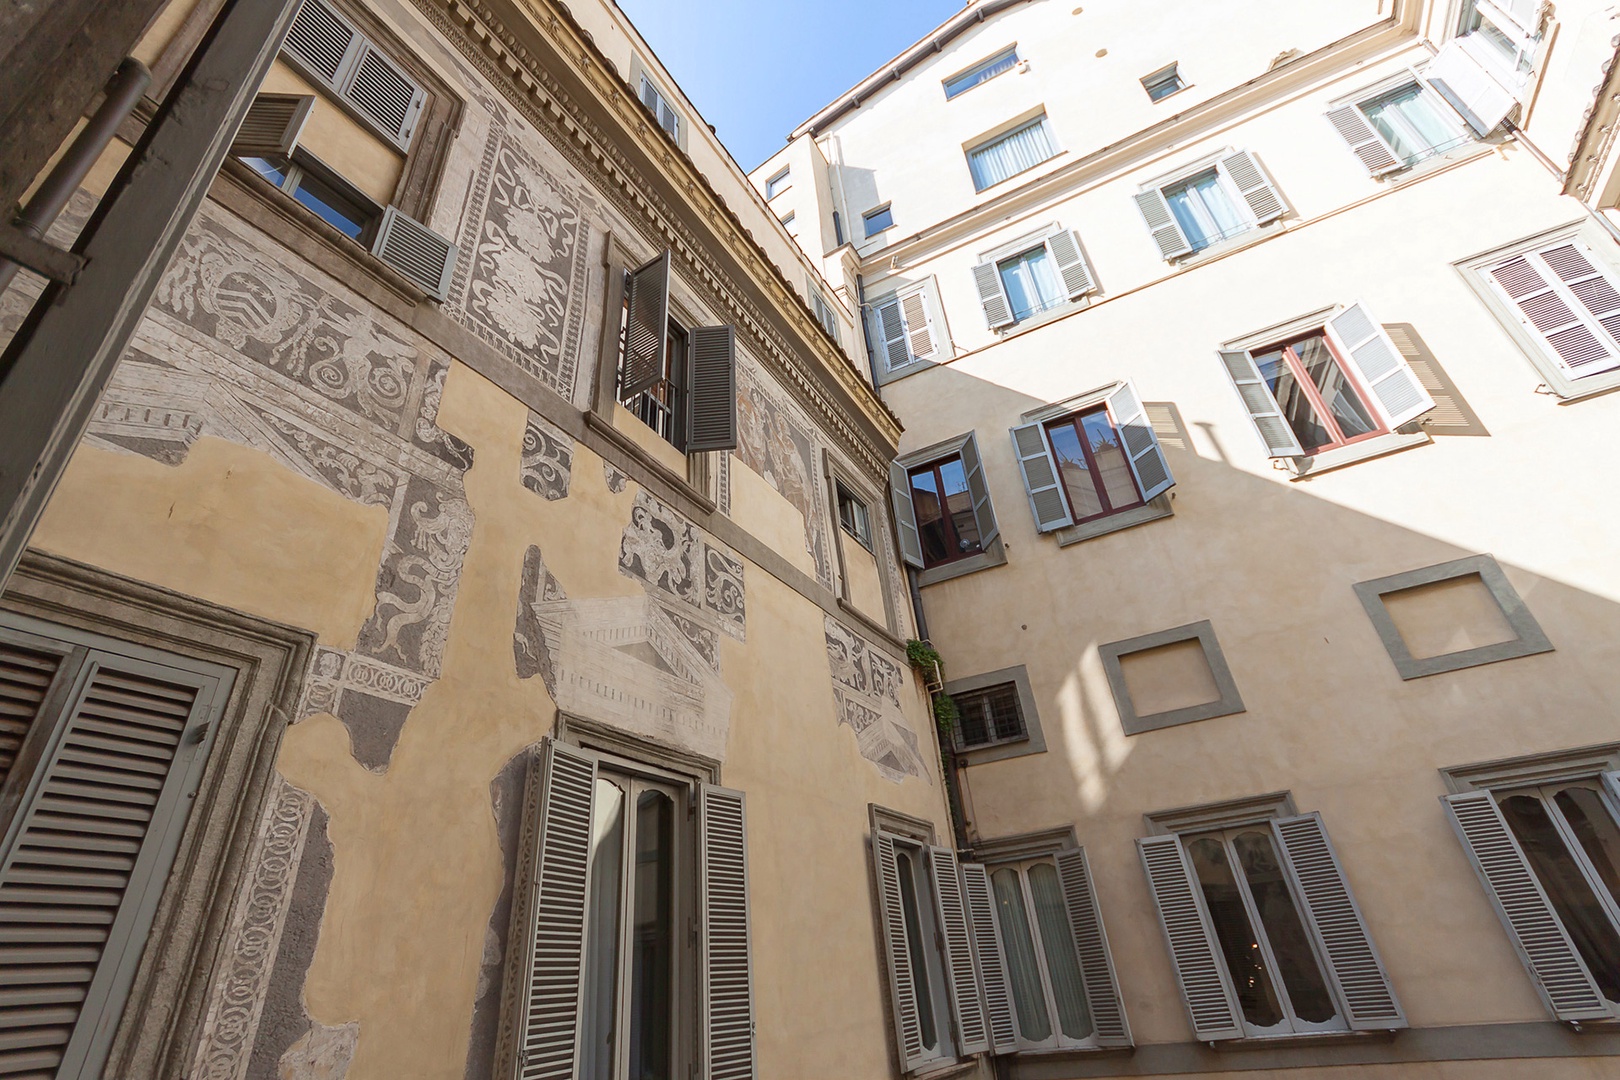 Inside the courtyard, Renaissance murals have been restored.